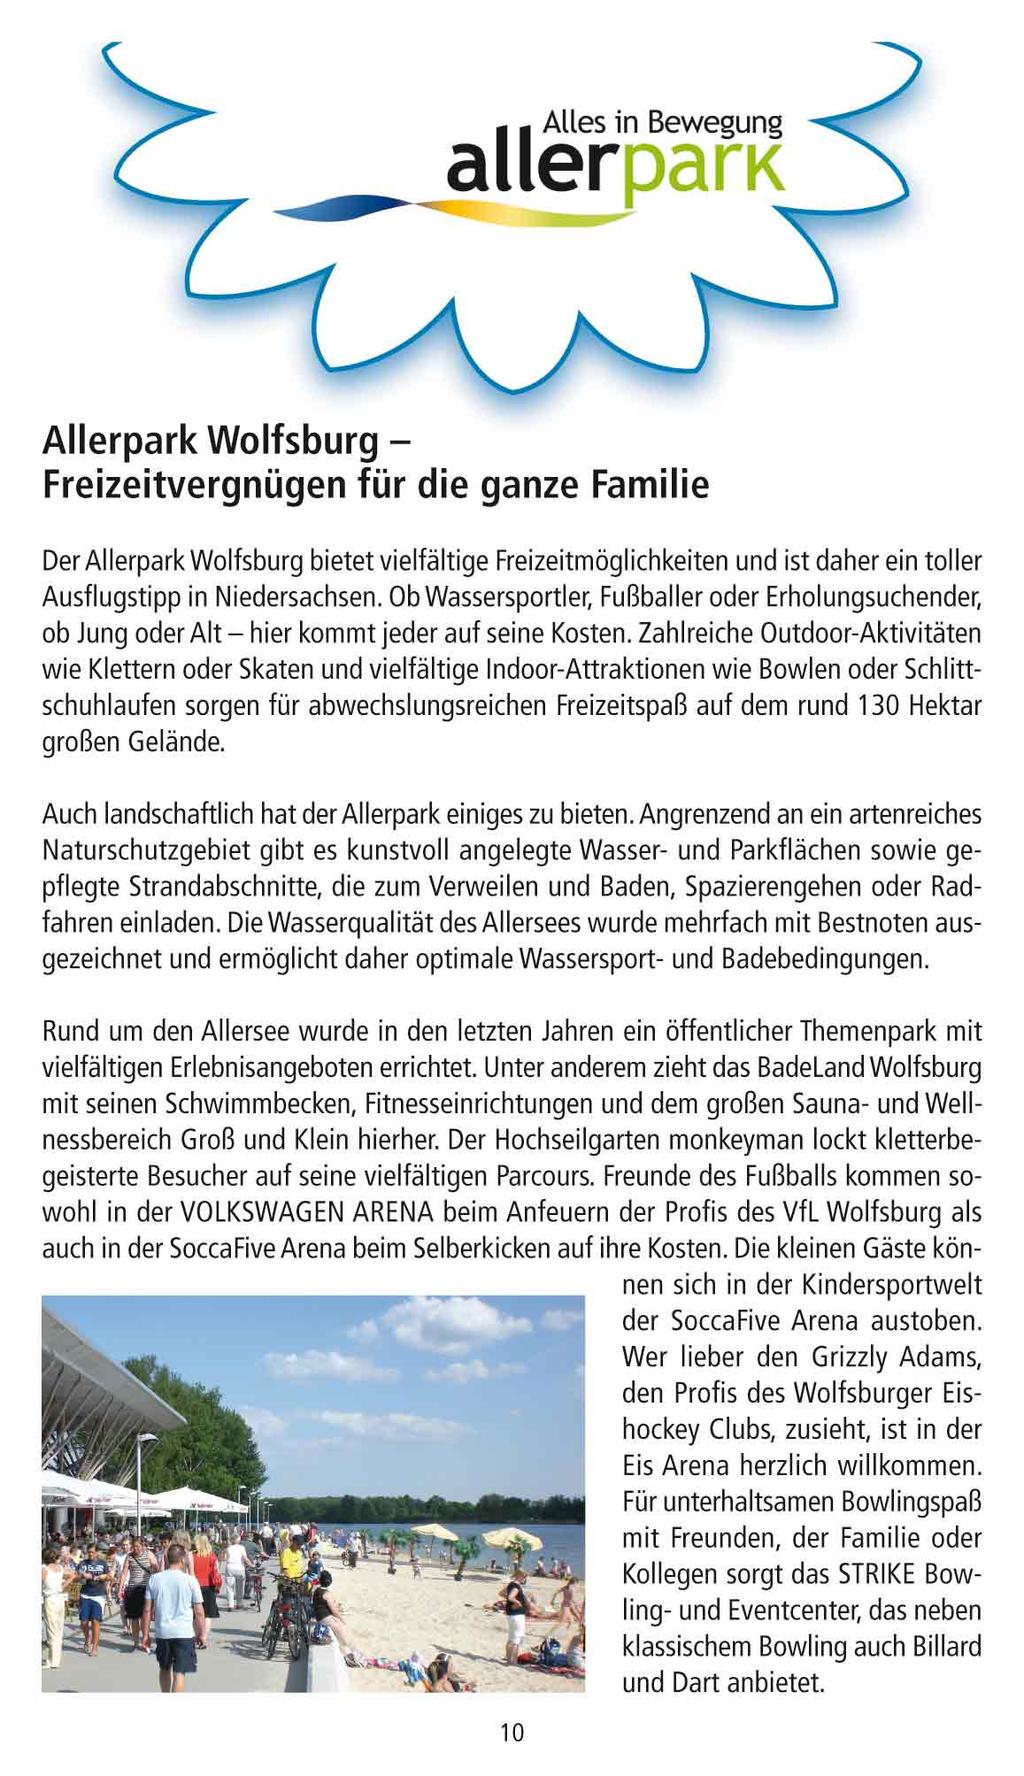 Allerpark Wolfsburg - Freizeitvergnügen für die ganze Familie Der Allerpark Wolfsburg bietet vielfältige Freizeitmöglichkeiten und ist daher ein toller Ausflugstipp in Niedersachsen.